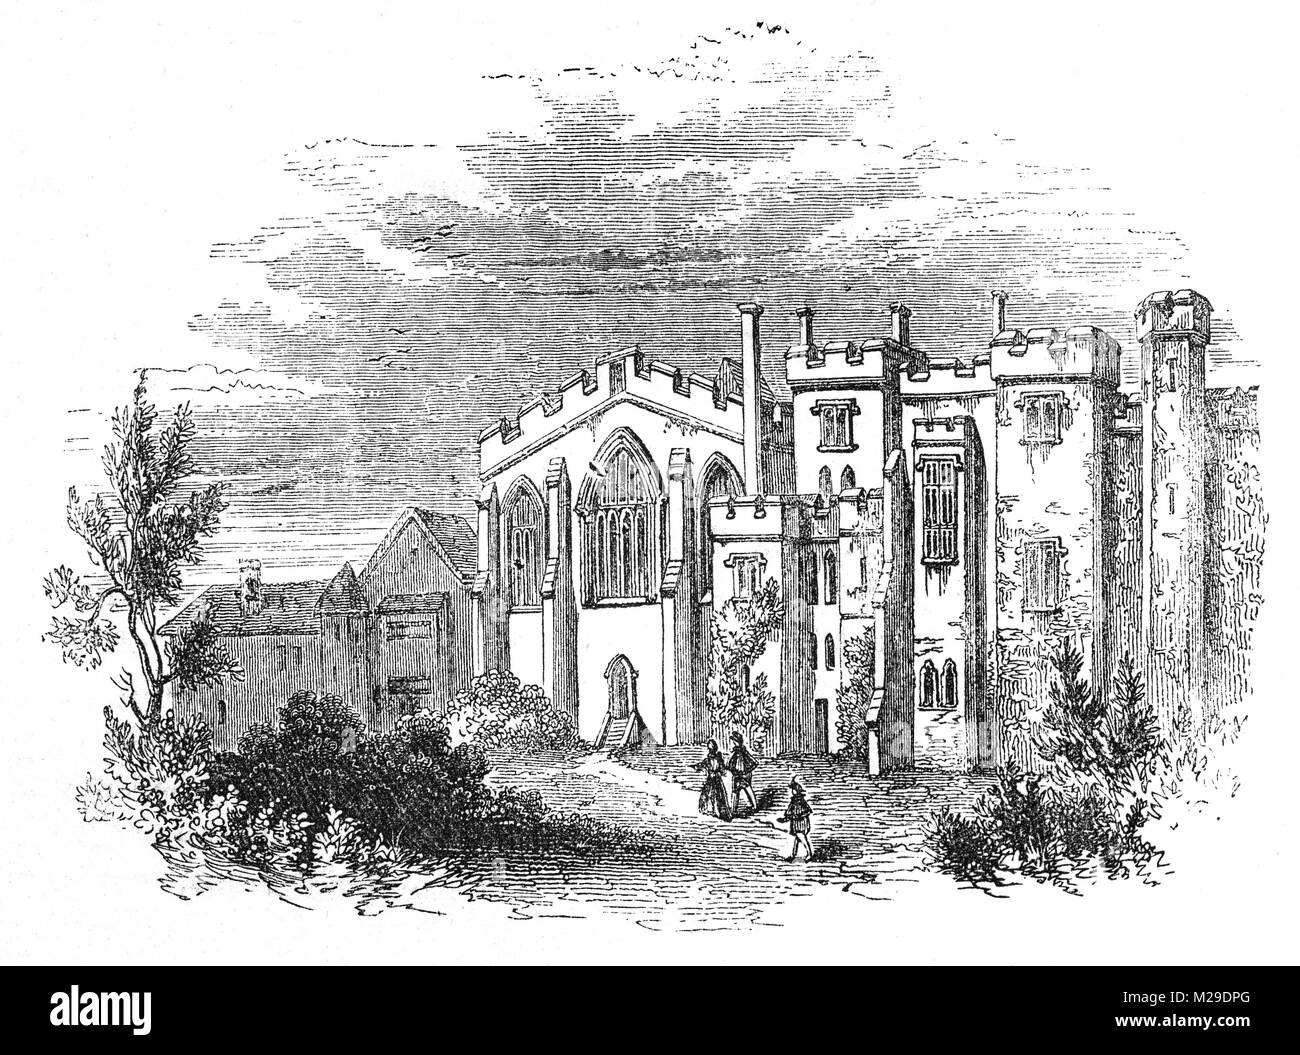 Un milieu du 17ème siècle vue de l'ancien prieuré, l'hôpital St Jean le siège français de l'Ordre des Hospitaliers de Saint-Jean de Jérusalem, les Chevaliers Hospitaliers. Le prieuré fut fondé vers 1144 à Londres, Angleterre Banque D'Images